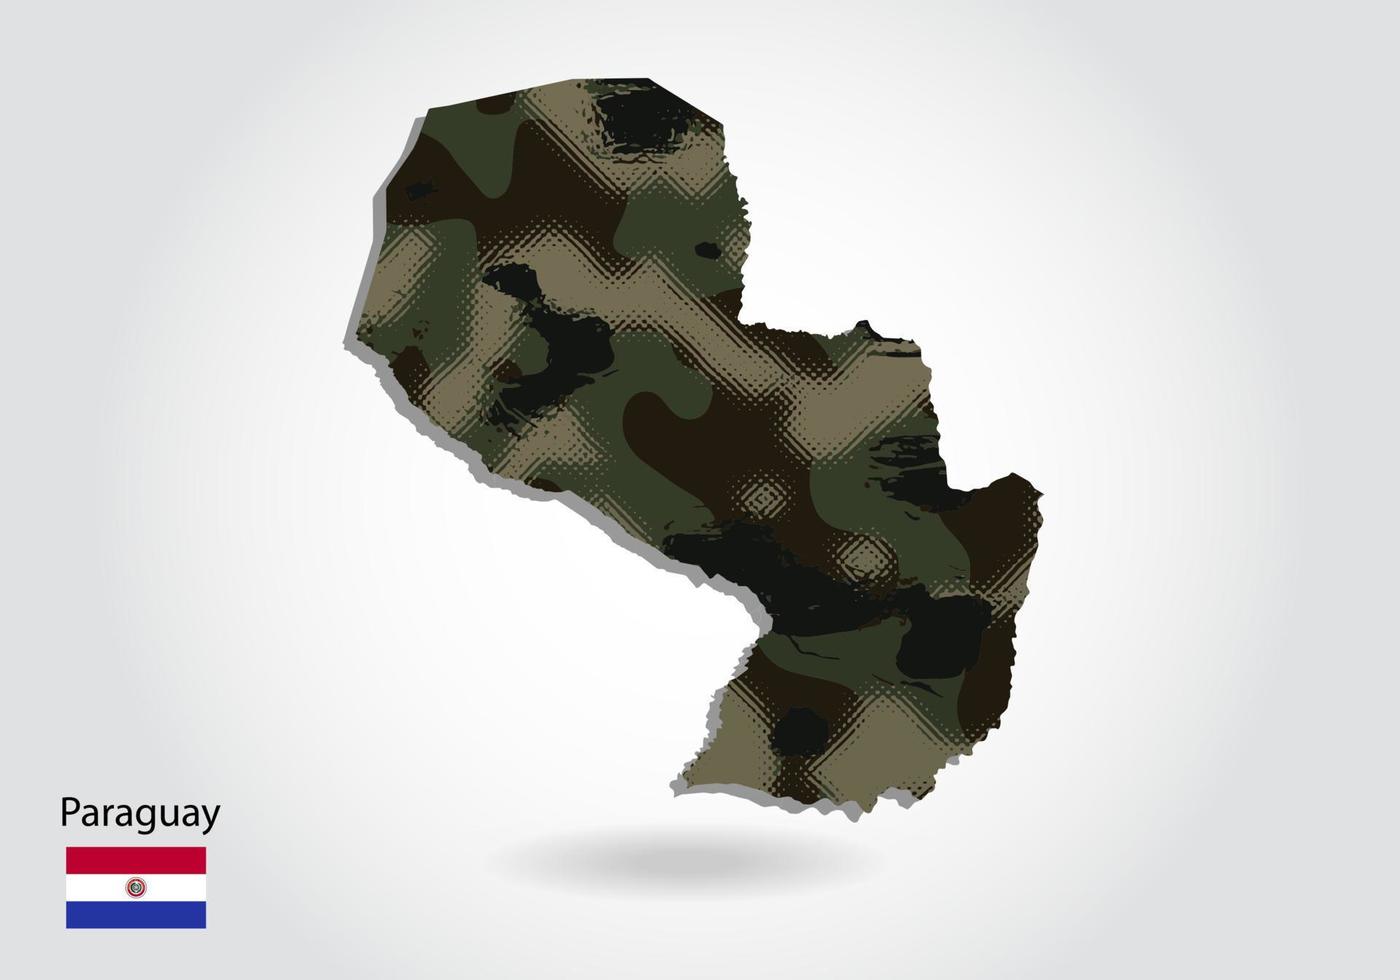 mapa de paraguay con patrón de camuflaje, bosque - textura verde en el mapa. concepto militar para ejército, soldado y guerra. escudo de armas, bandera. vector